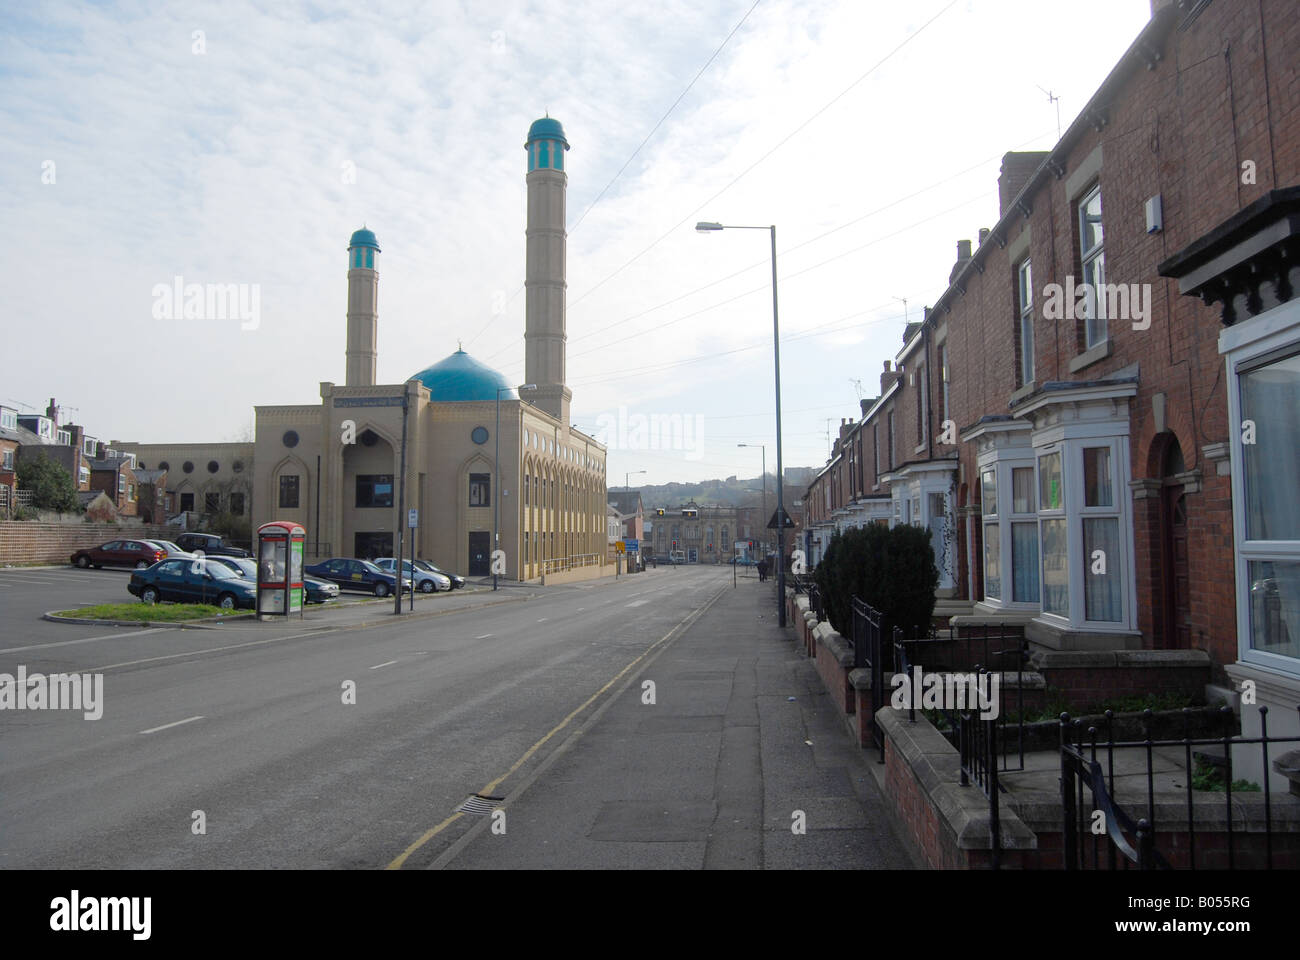 Moschee Minarett Gebet Gebete, die Sheffield Road Reihenhaus Häuser integriert separate Stockfoto